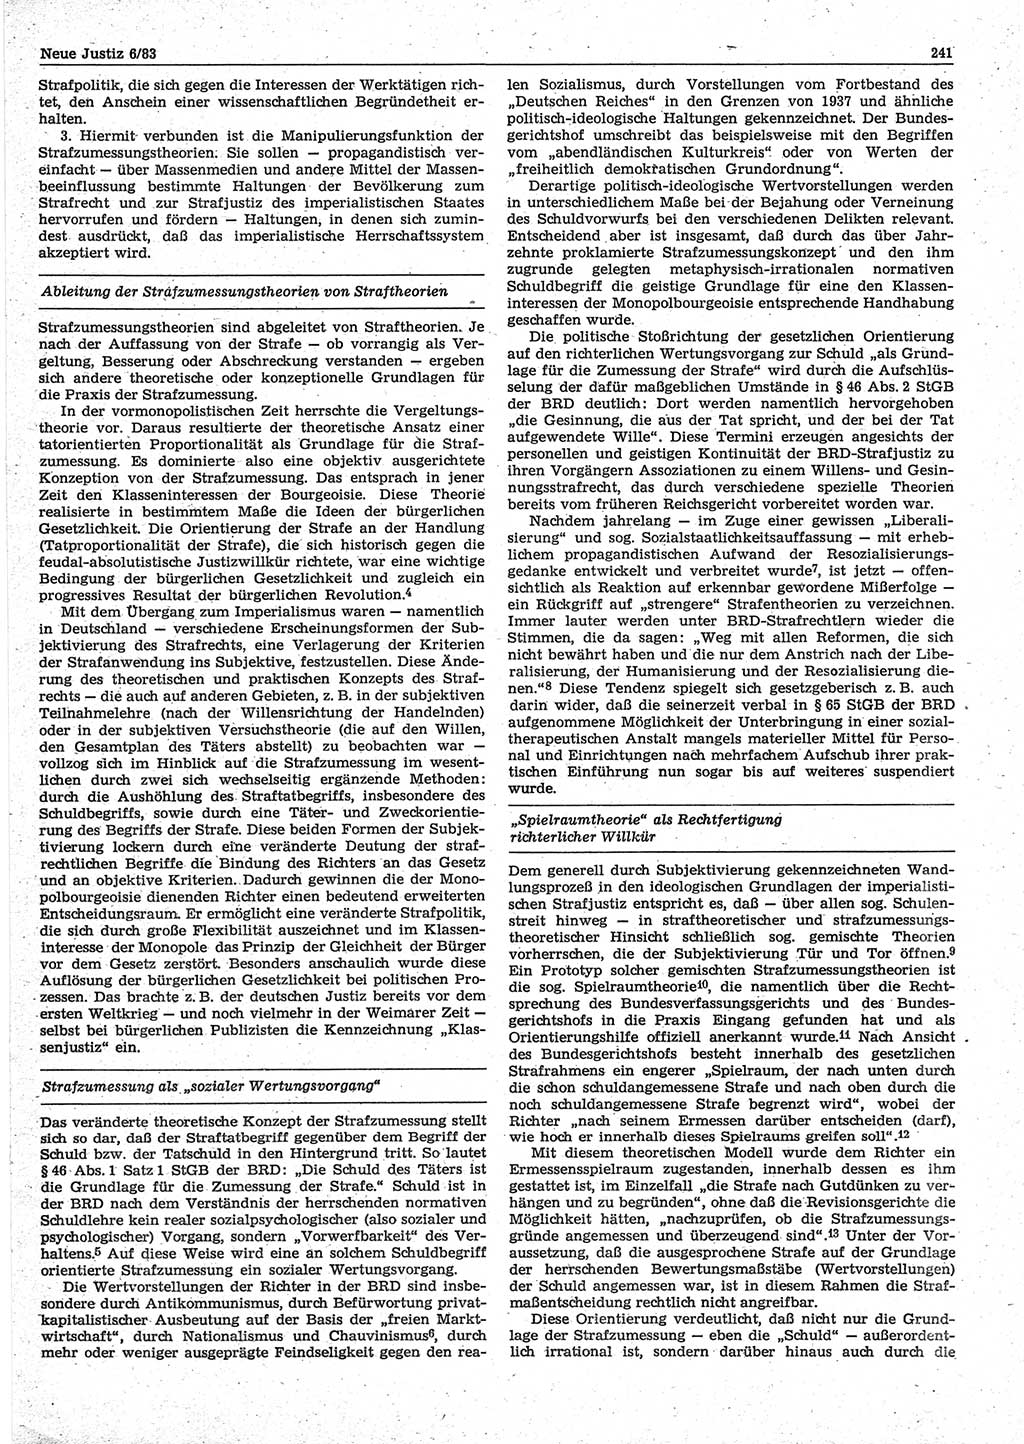 Neue Justiz (NJ), Zeitschrift für sozialistisches Recht und Gesetzlichkeit [Deutsche Demokratische Republik (DDR)], 37. Jahrgang 1983, Seite 241 (NJ DDR 1983, S. 241)